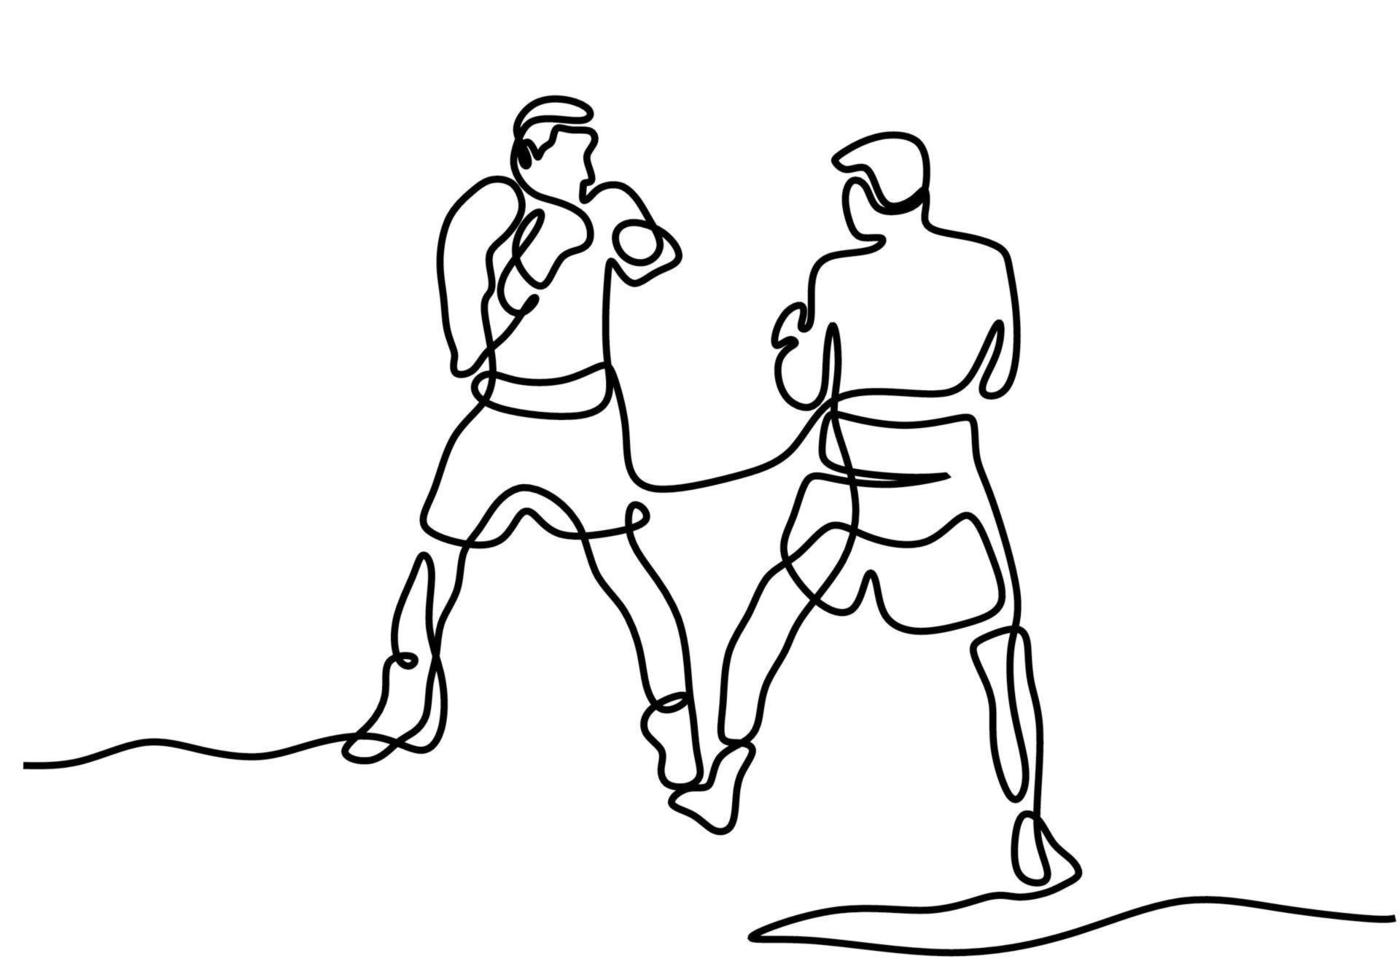 dessin continu d'une ligne de deux hommes jouant à la boxe dans la zone du ring. deux boxeurs professionnels se battent dans un tournoi isolé sur un style minimaliste de fond blanc. illustration vectorielle vecteur